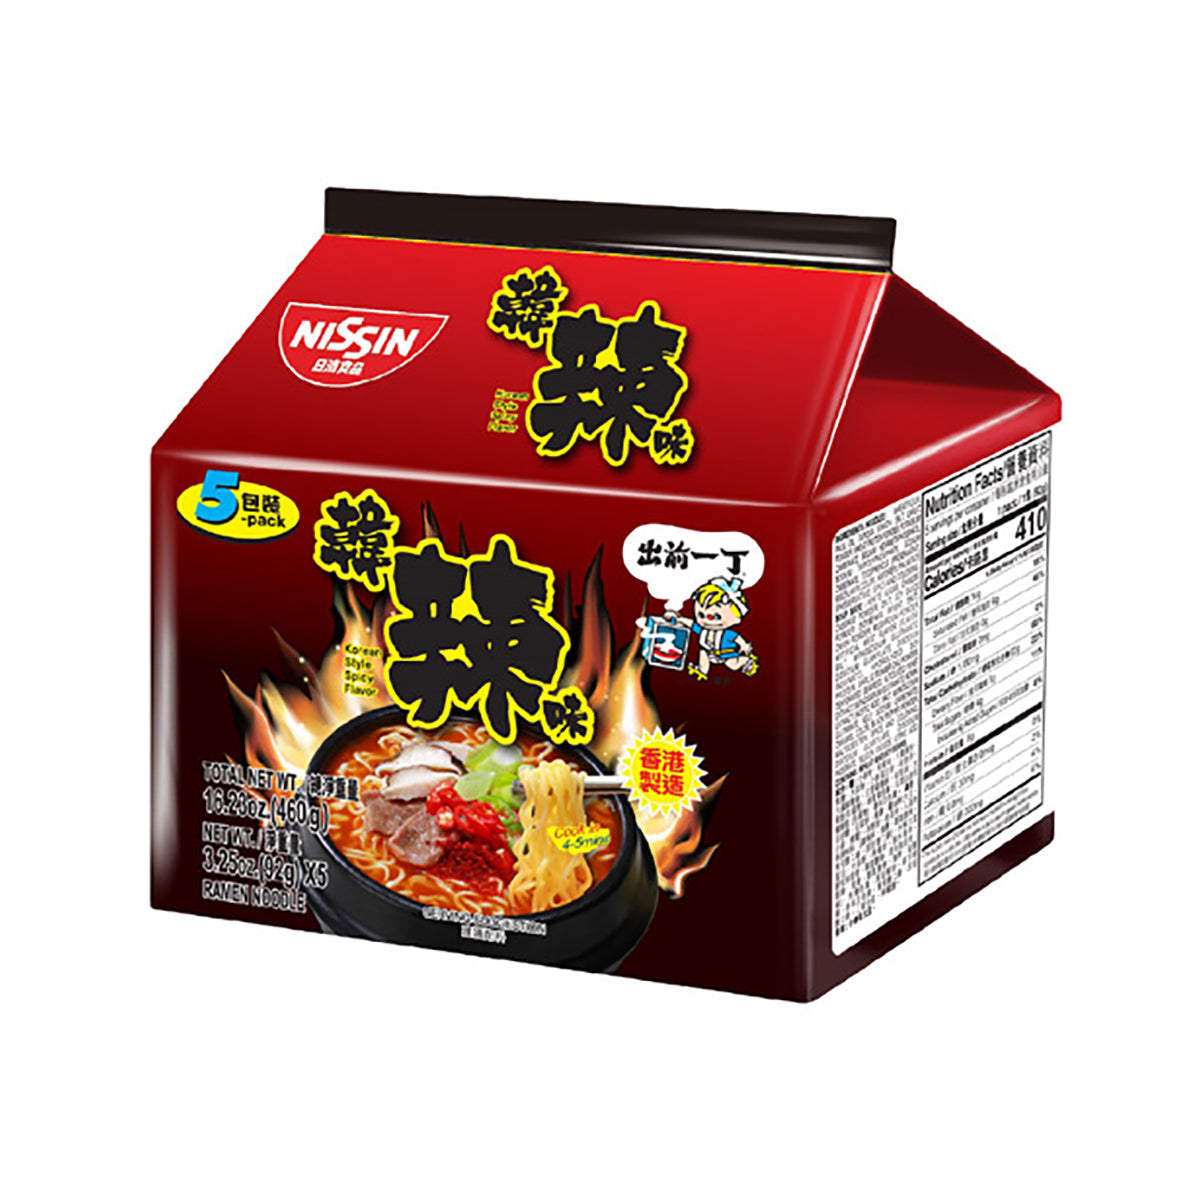 nissin ramen korean spicy 92g - 5pk